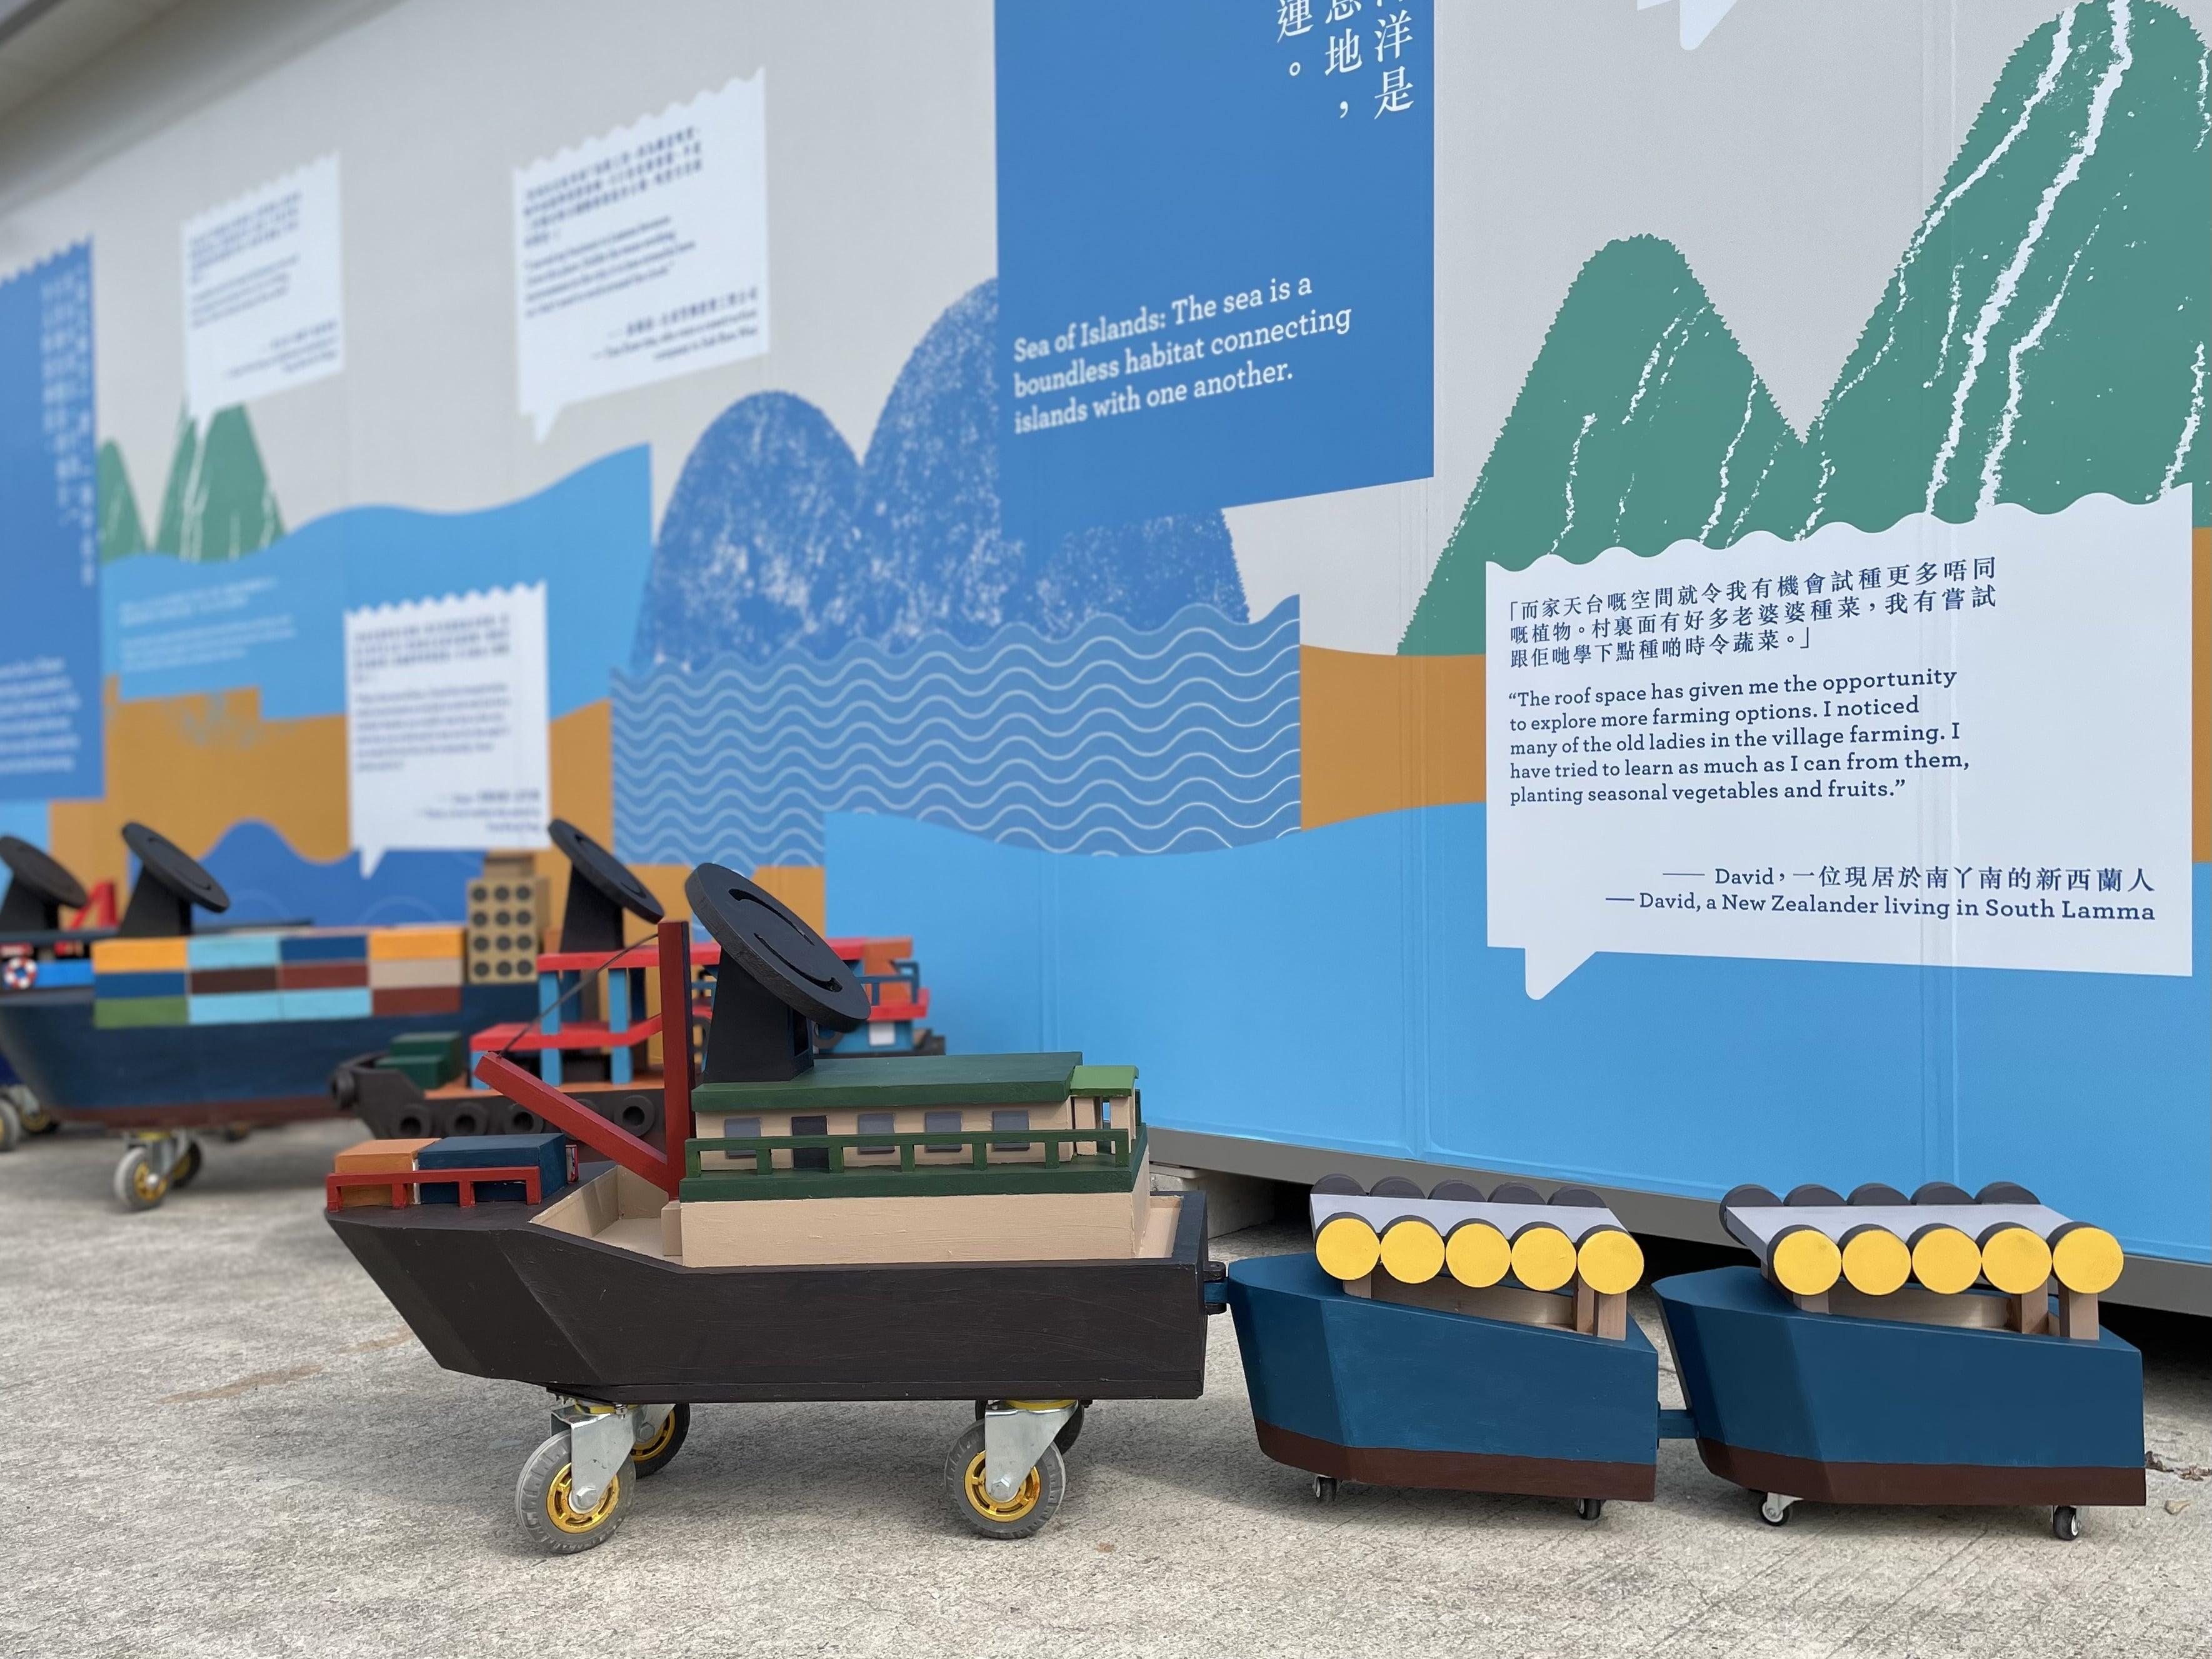 藝術推廣辦事處策劃的公共藝術計劃「南丫說：」今日（十二月十一日）在南丫島索罟灣展開。藝術家沈君怡參考了於南丫島日常出現的船舶樣式，製作出形態各異的互動玩具船裝置，並邀請島上居民為船身着色。